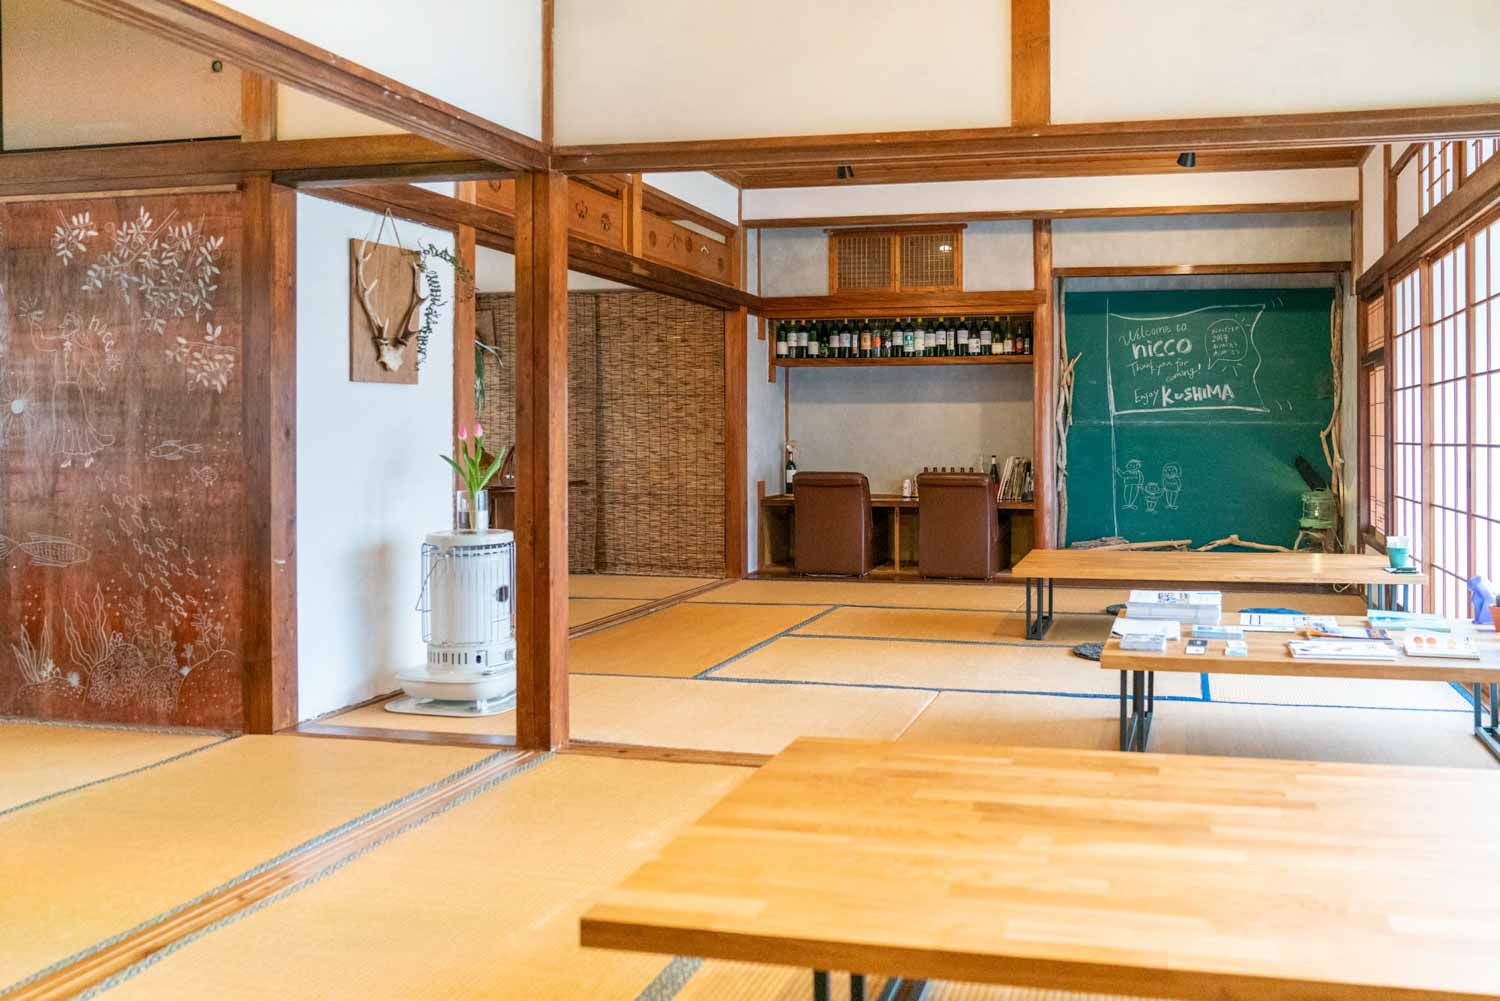 Japanisches Restaurant mit einem Tatami-Raum.